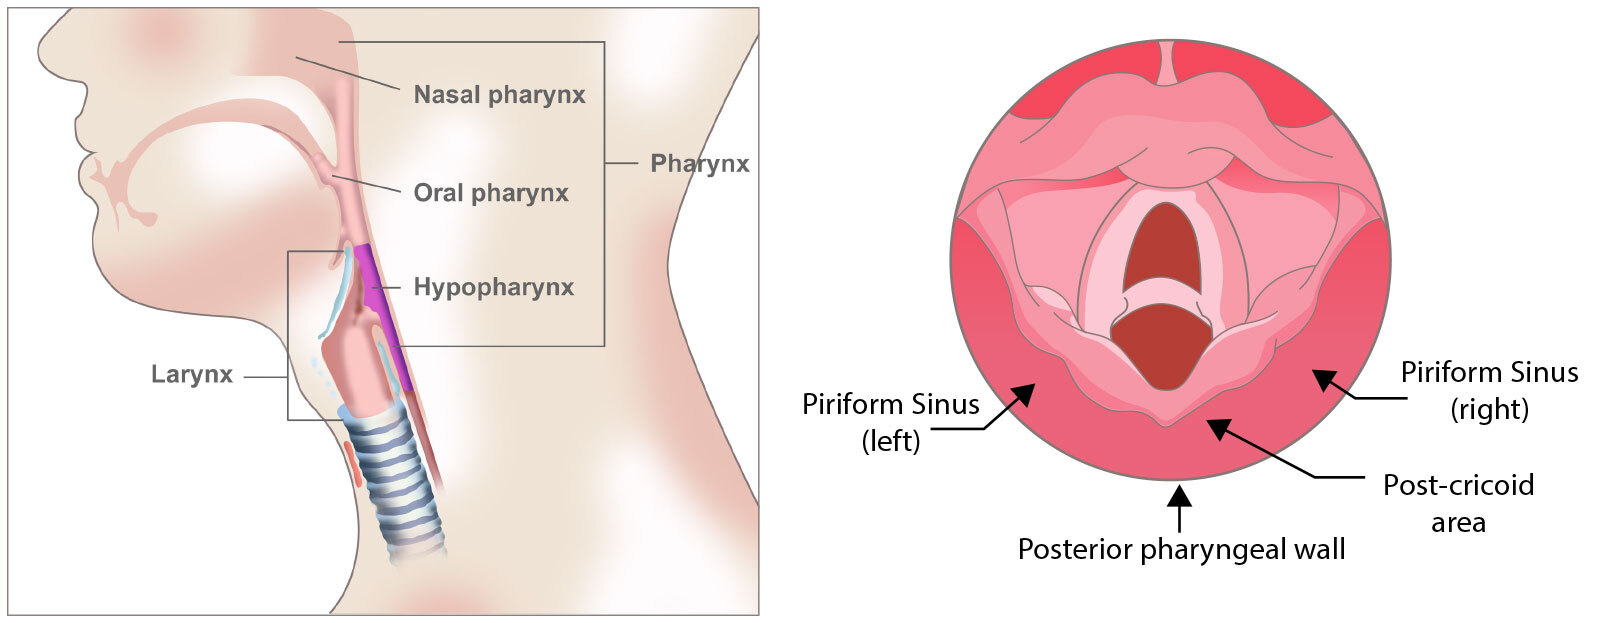 anatomy of the hypopharynx